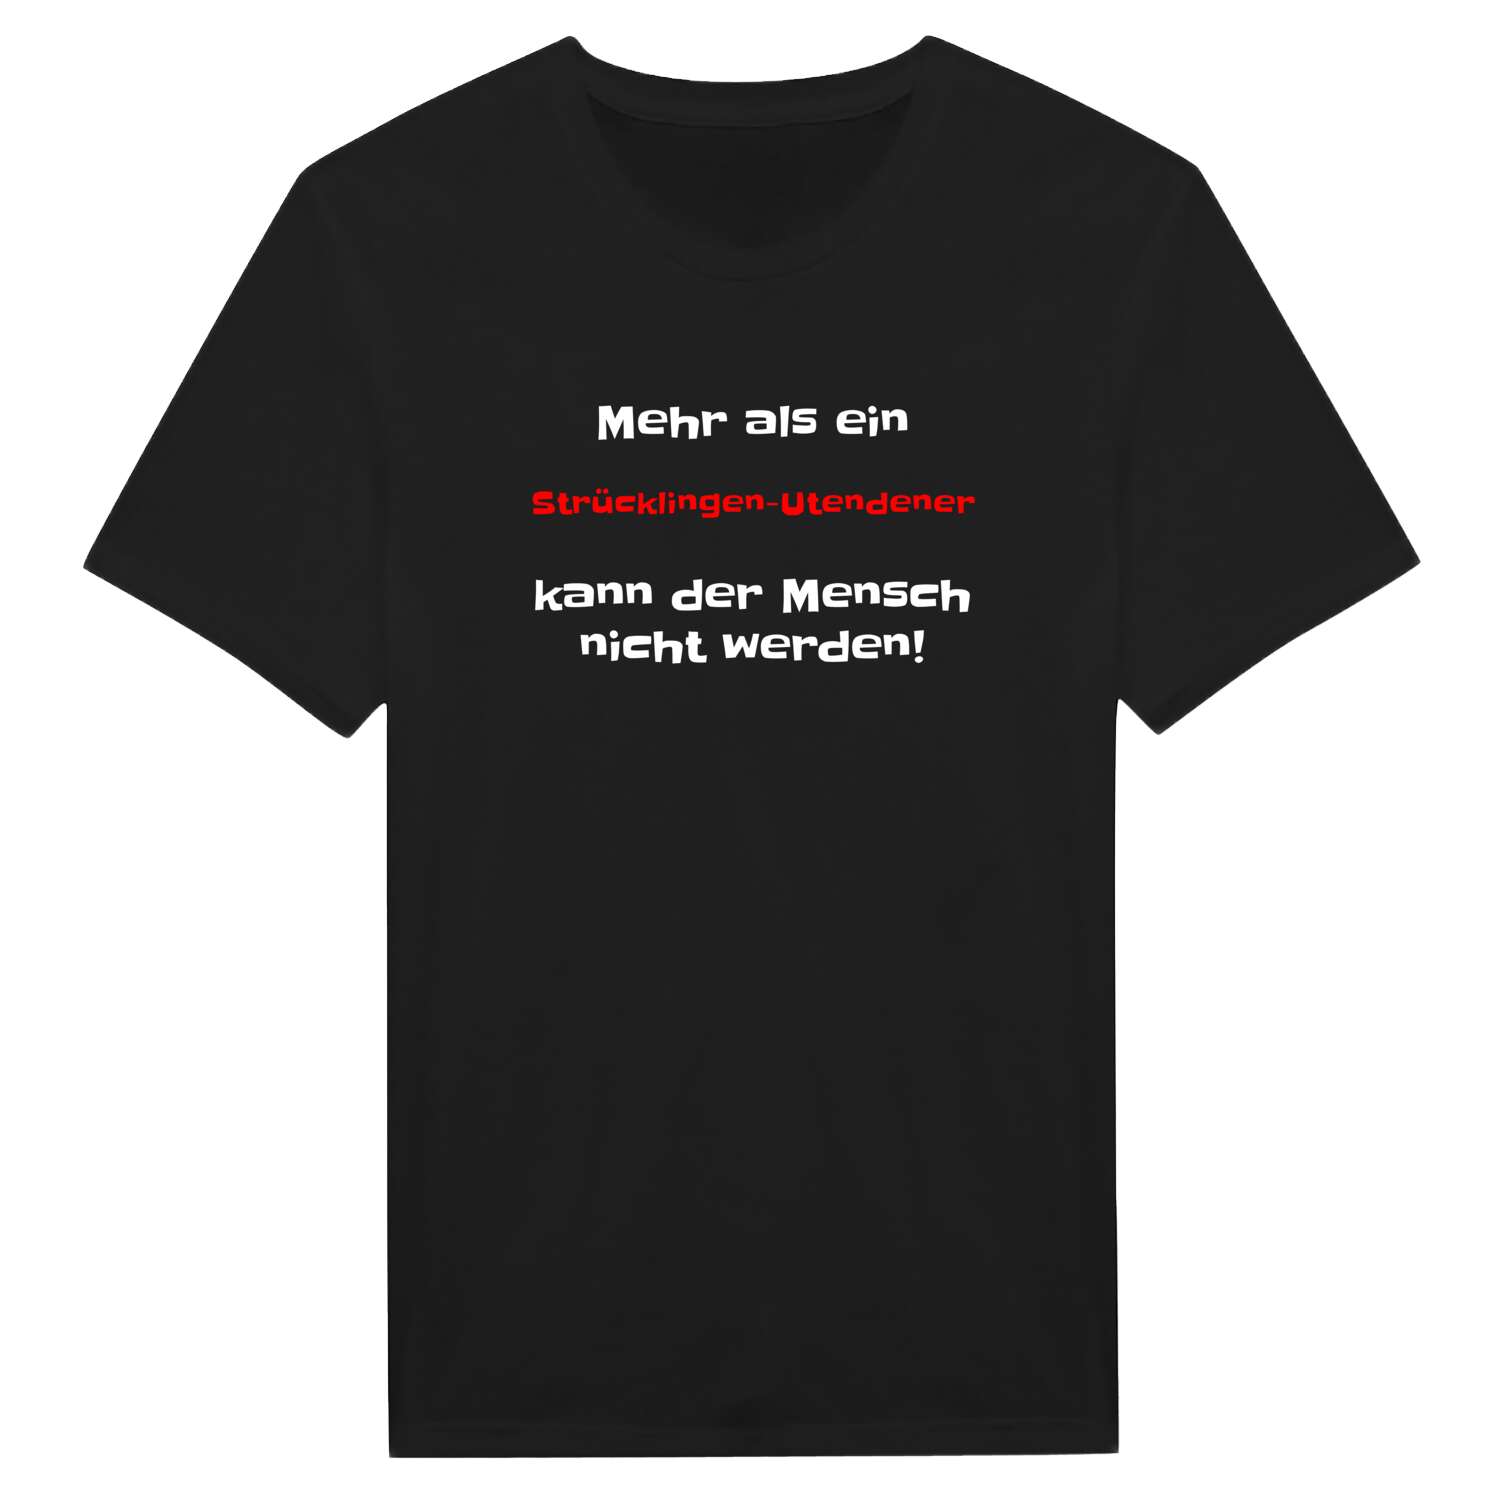 Strücklingen-Utende T-Shirt »Mehr als ein«